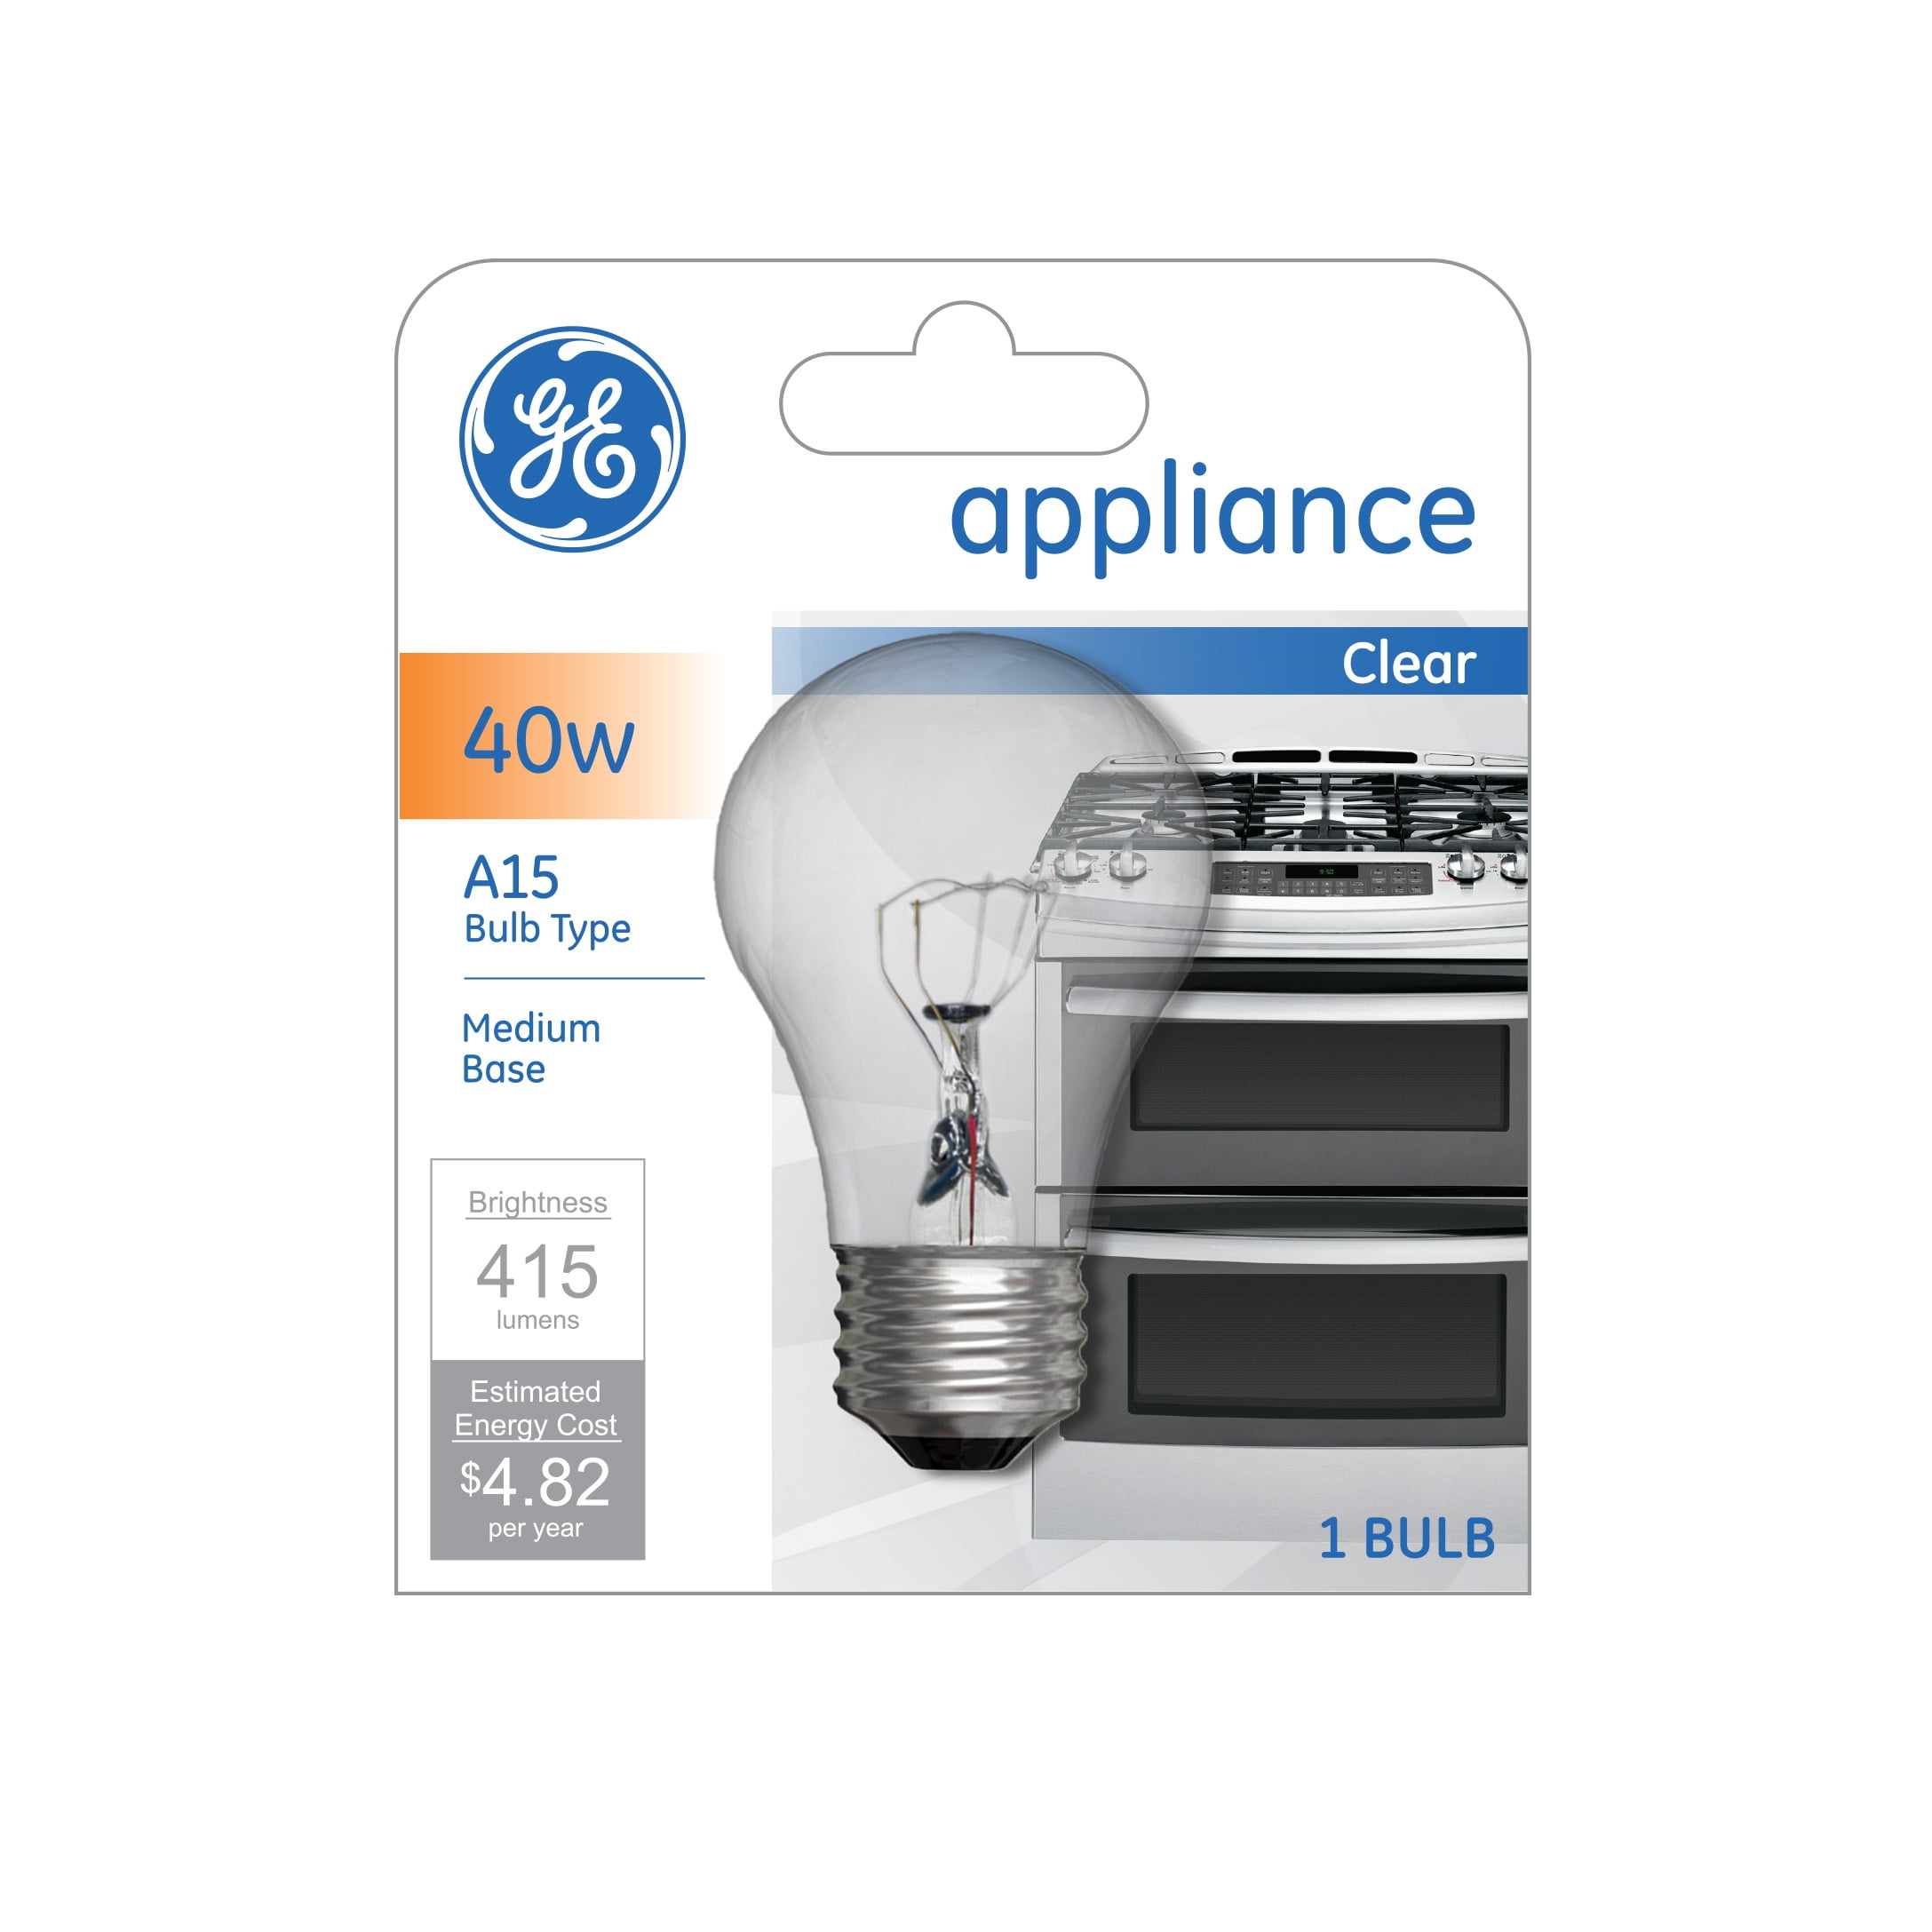 Ge 40w A15 Appliance Speciality Clear Medium Base Bulb 415 lumens 15206